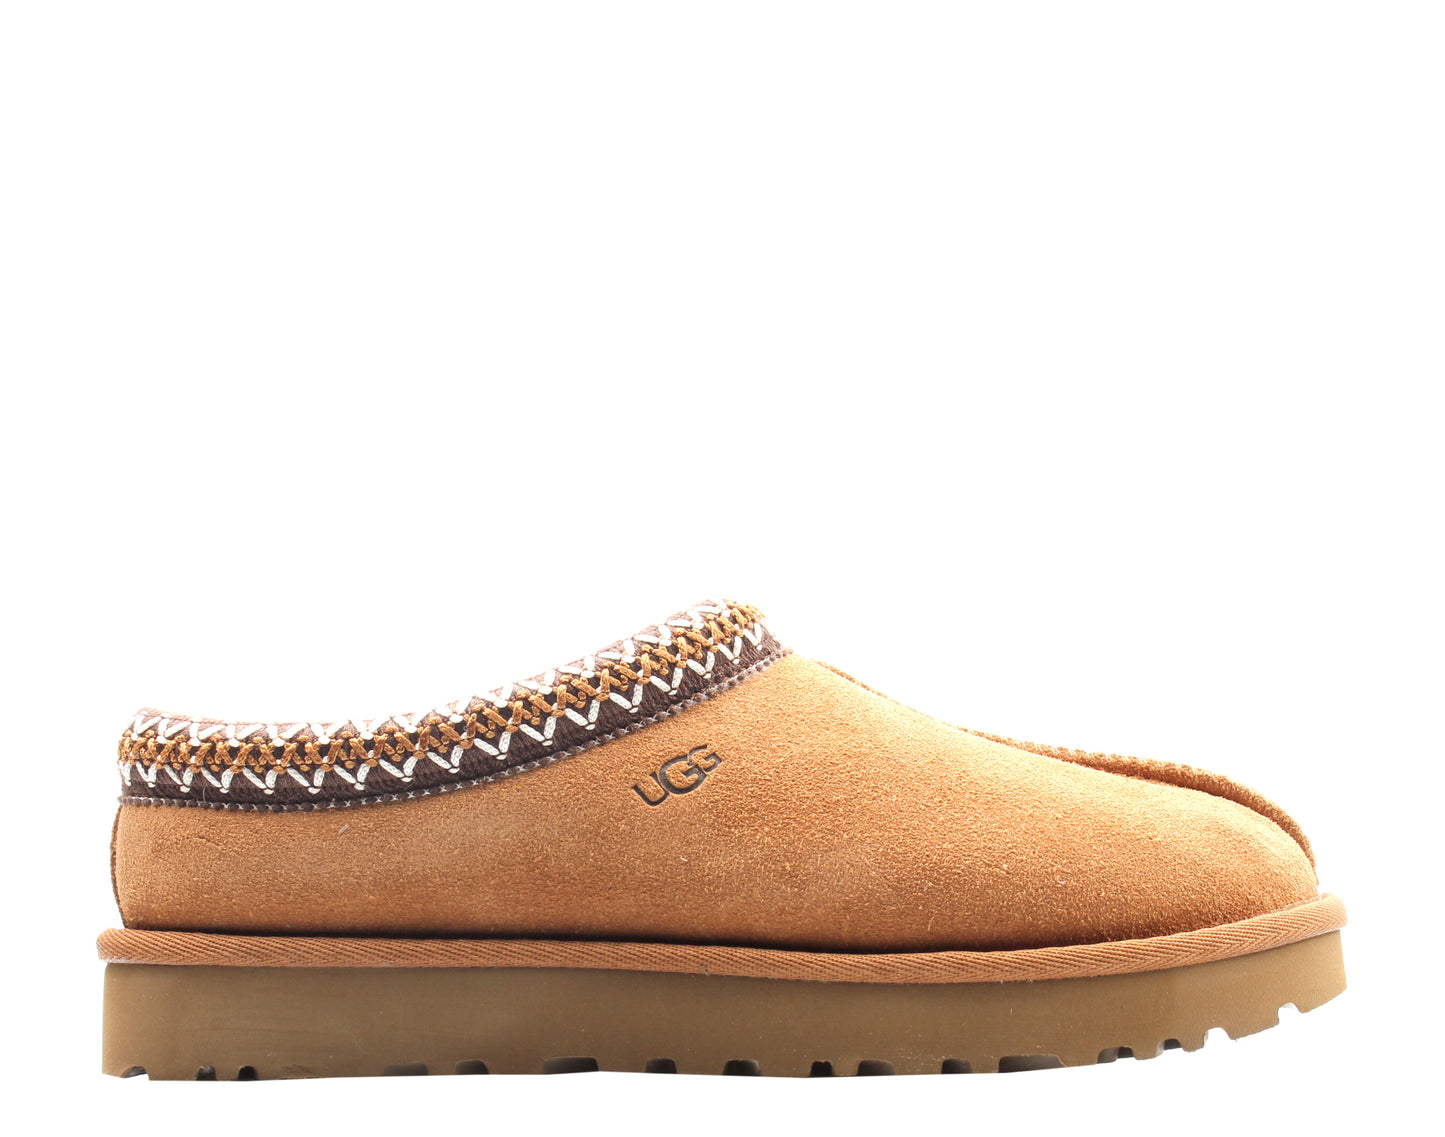 UGG Australia Tasman Chestnut Women's Shoes 5955-CHE